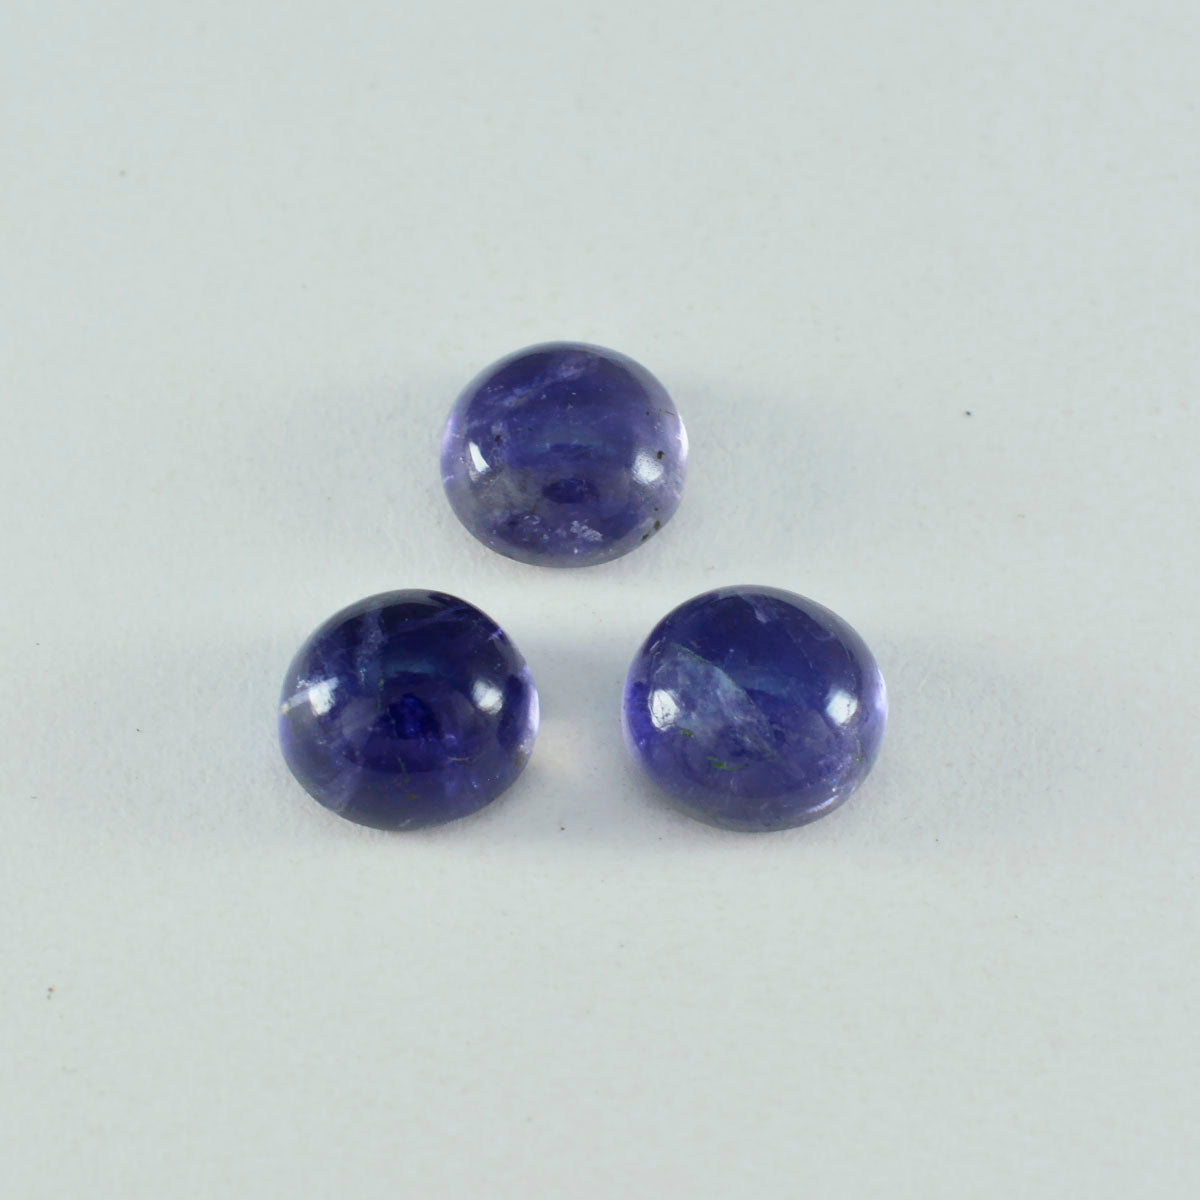 Riyogems 1PC blauwe ioliet cabochon 12x12 mm ronde vorm mooie kwaliteitsedelstenen